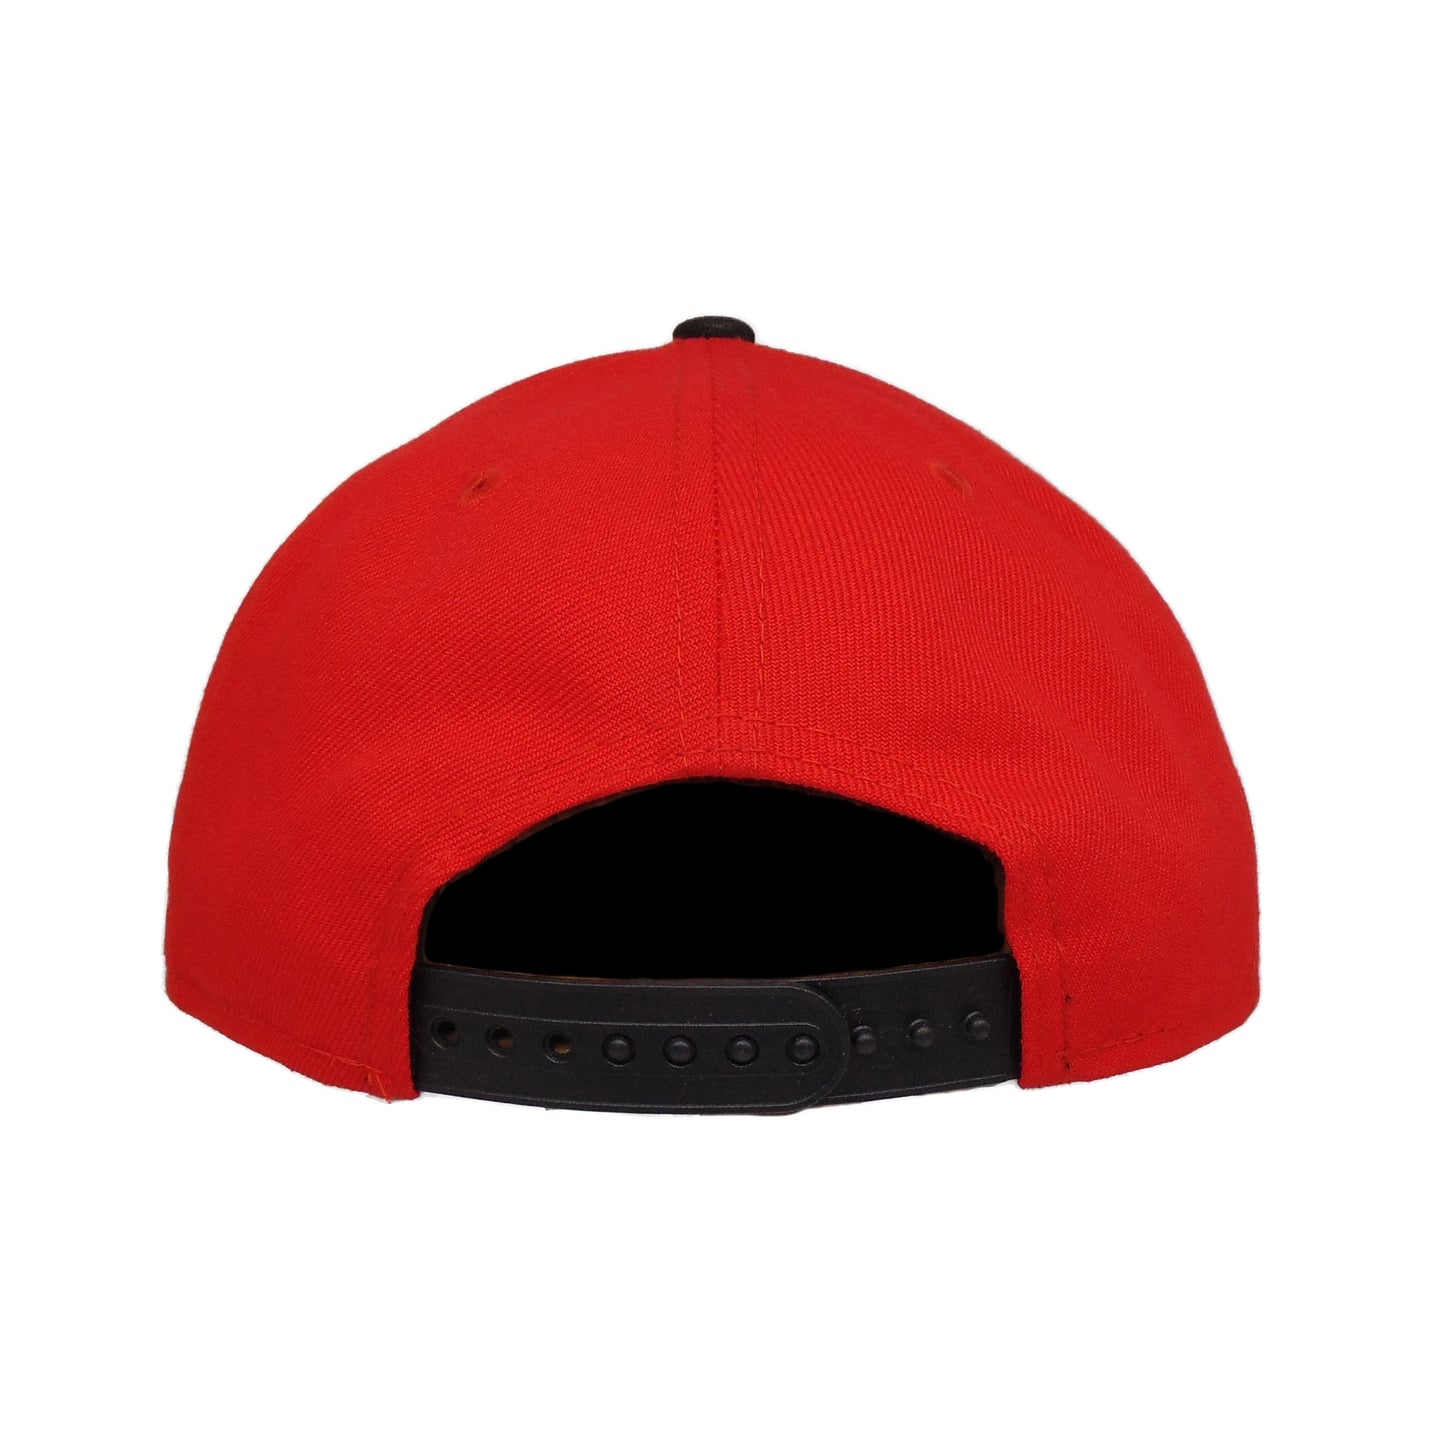 Kansas City Chiefs Custom New Era 9FIFTY Snapback Cap Red